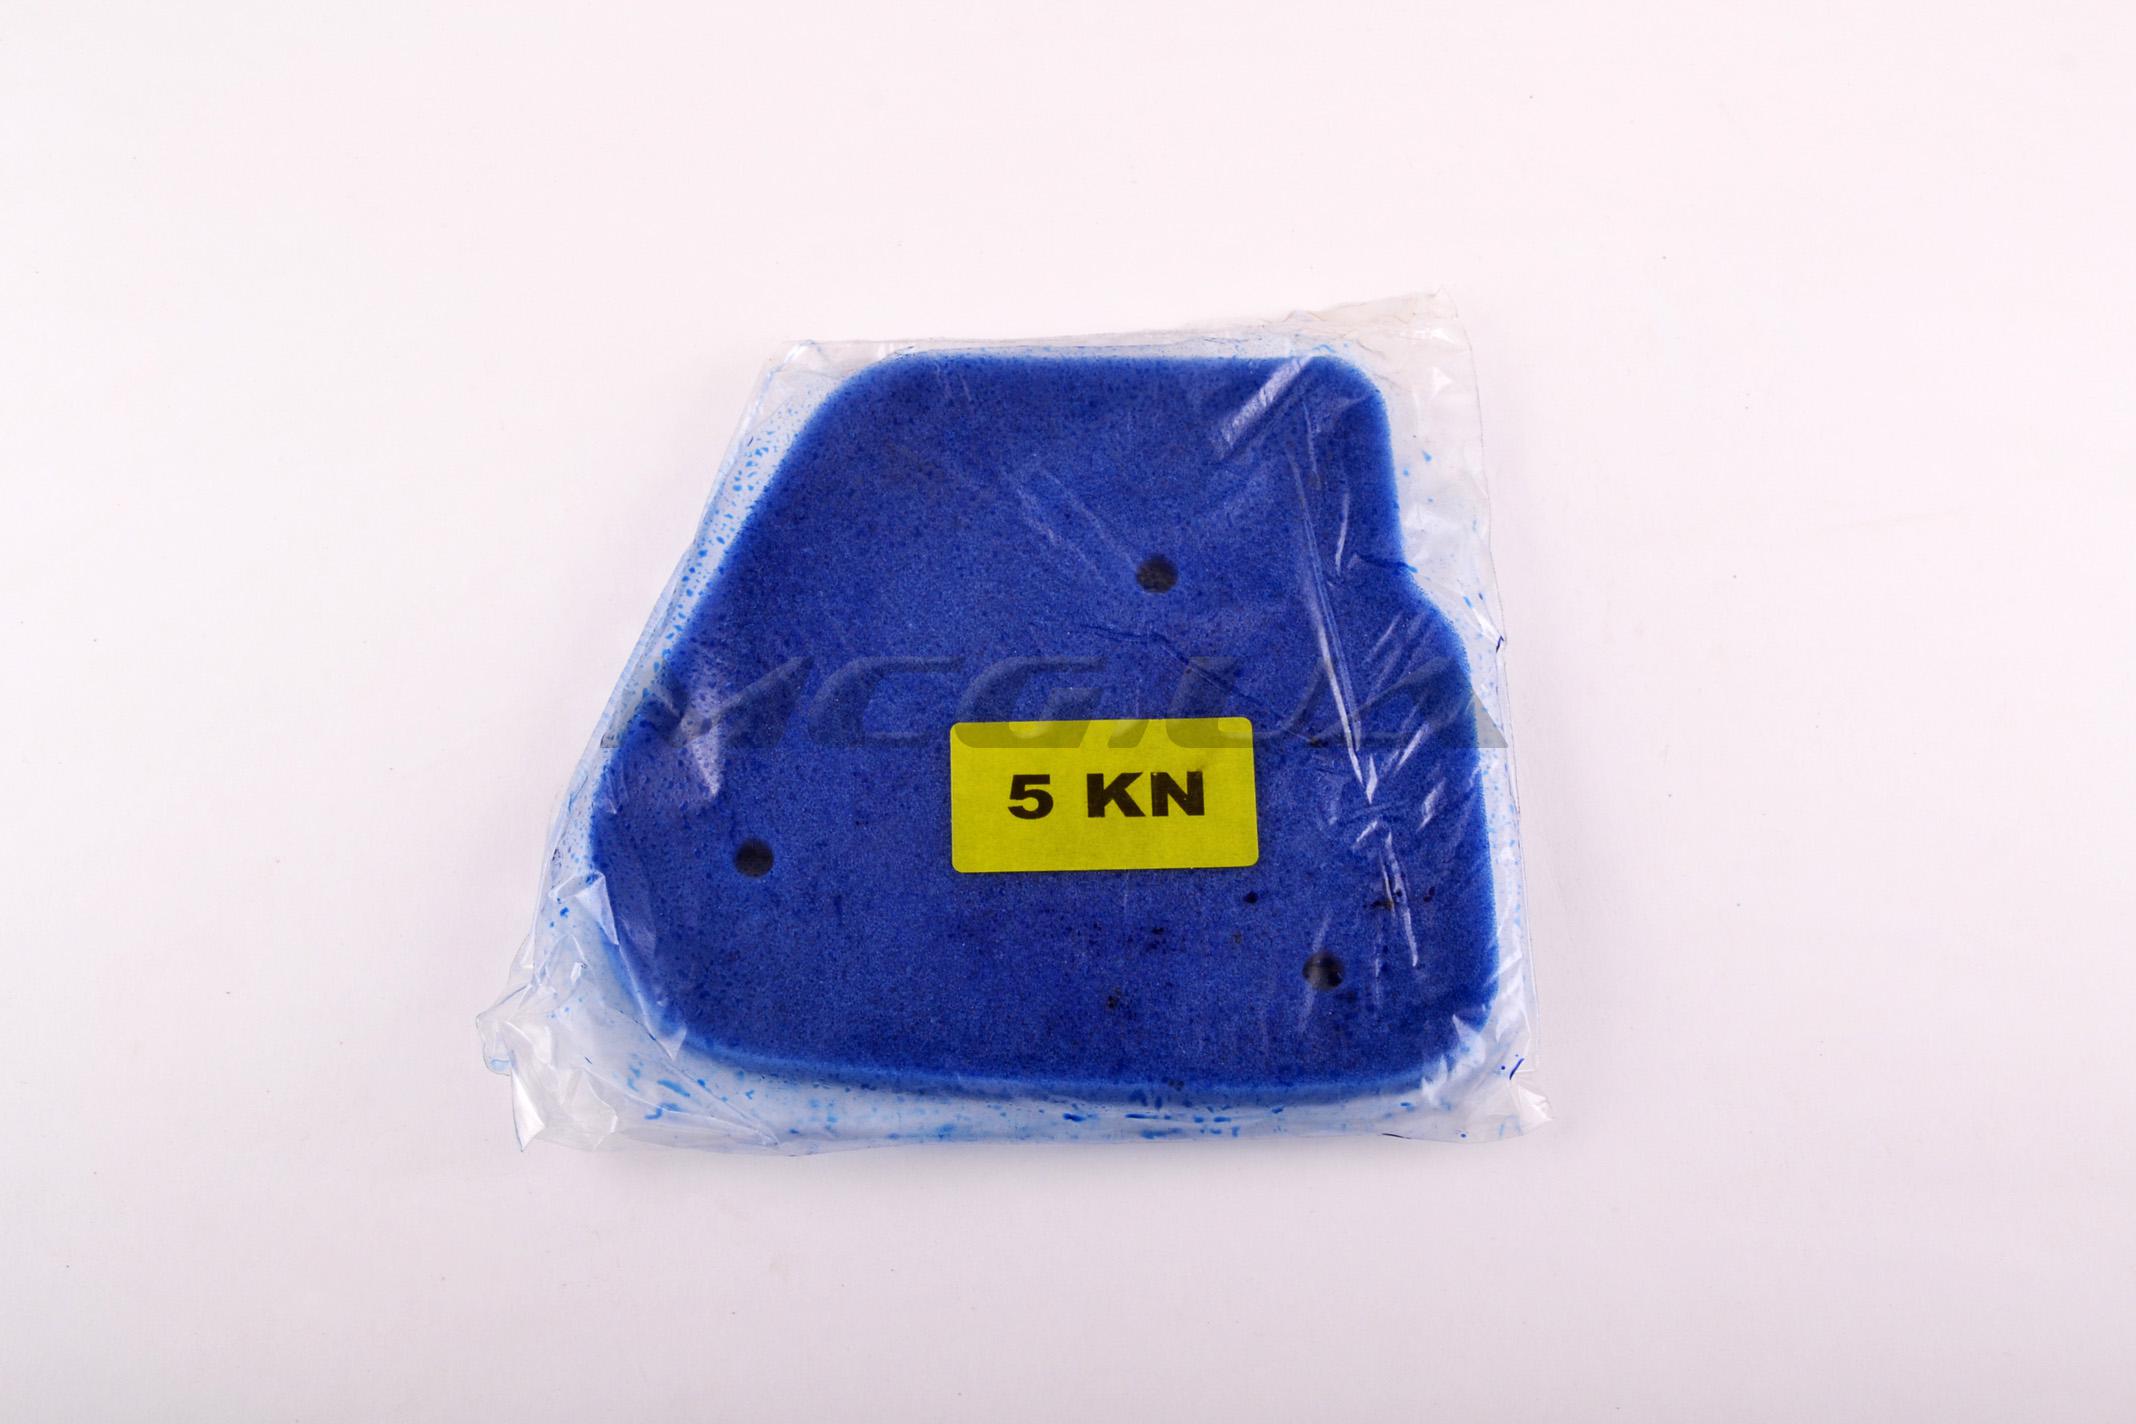 Элемент воздушного фильтра Yamaha JOG 5KN (поролон с пропиткой) (синий)